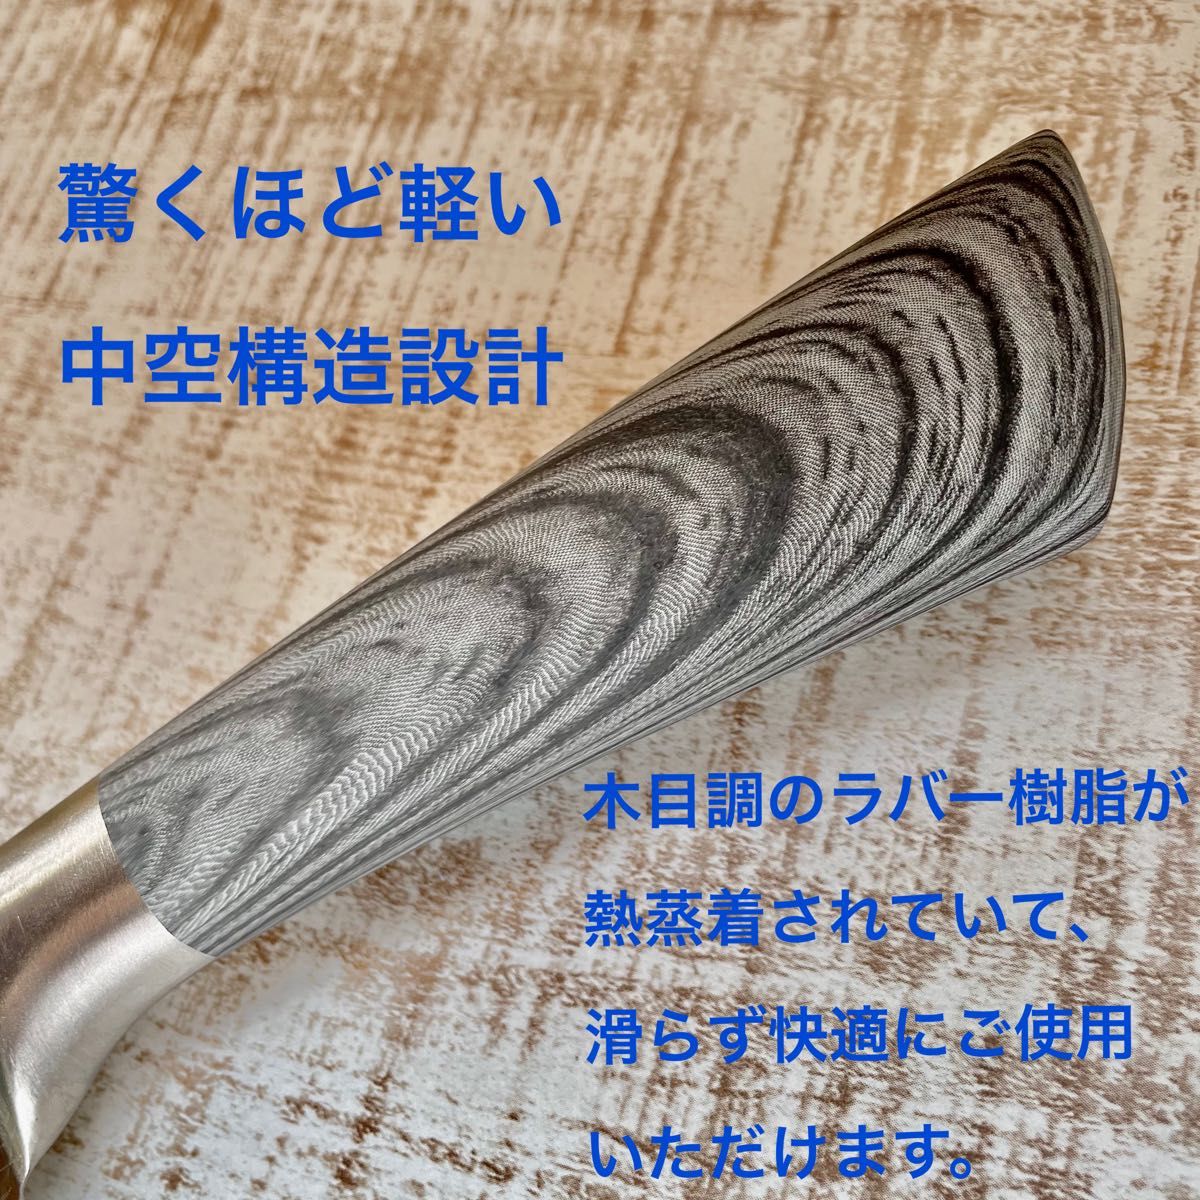 8インチ　シェフナイフ 万能包丁　7CR17 高炭素ステンレス鋼　ダマスカス模様　牛刀